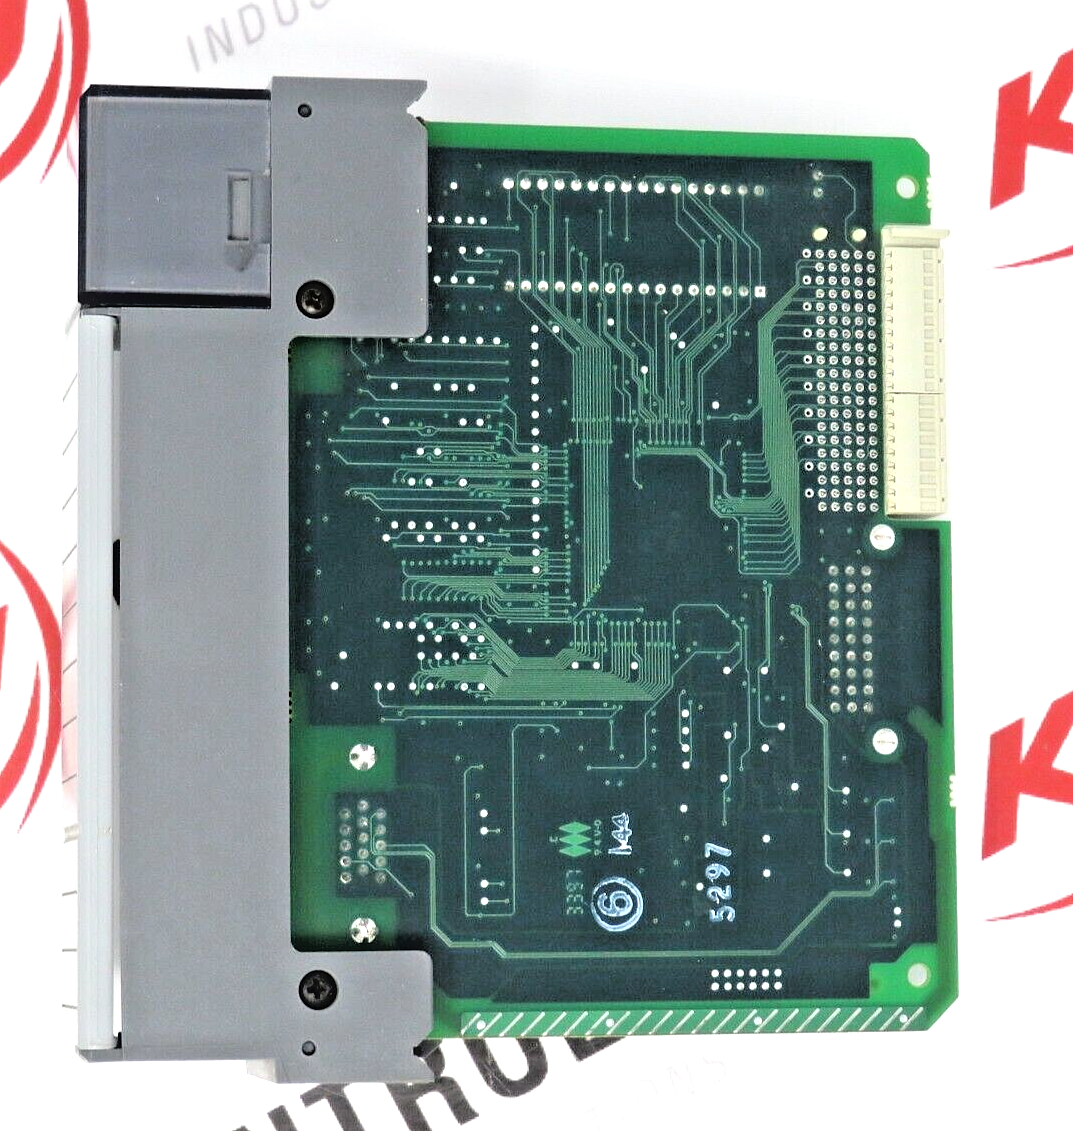 Allen-Bradley 1747-OCVGA1 Open Controller VGA Interface Module Series A